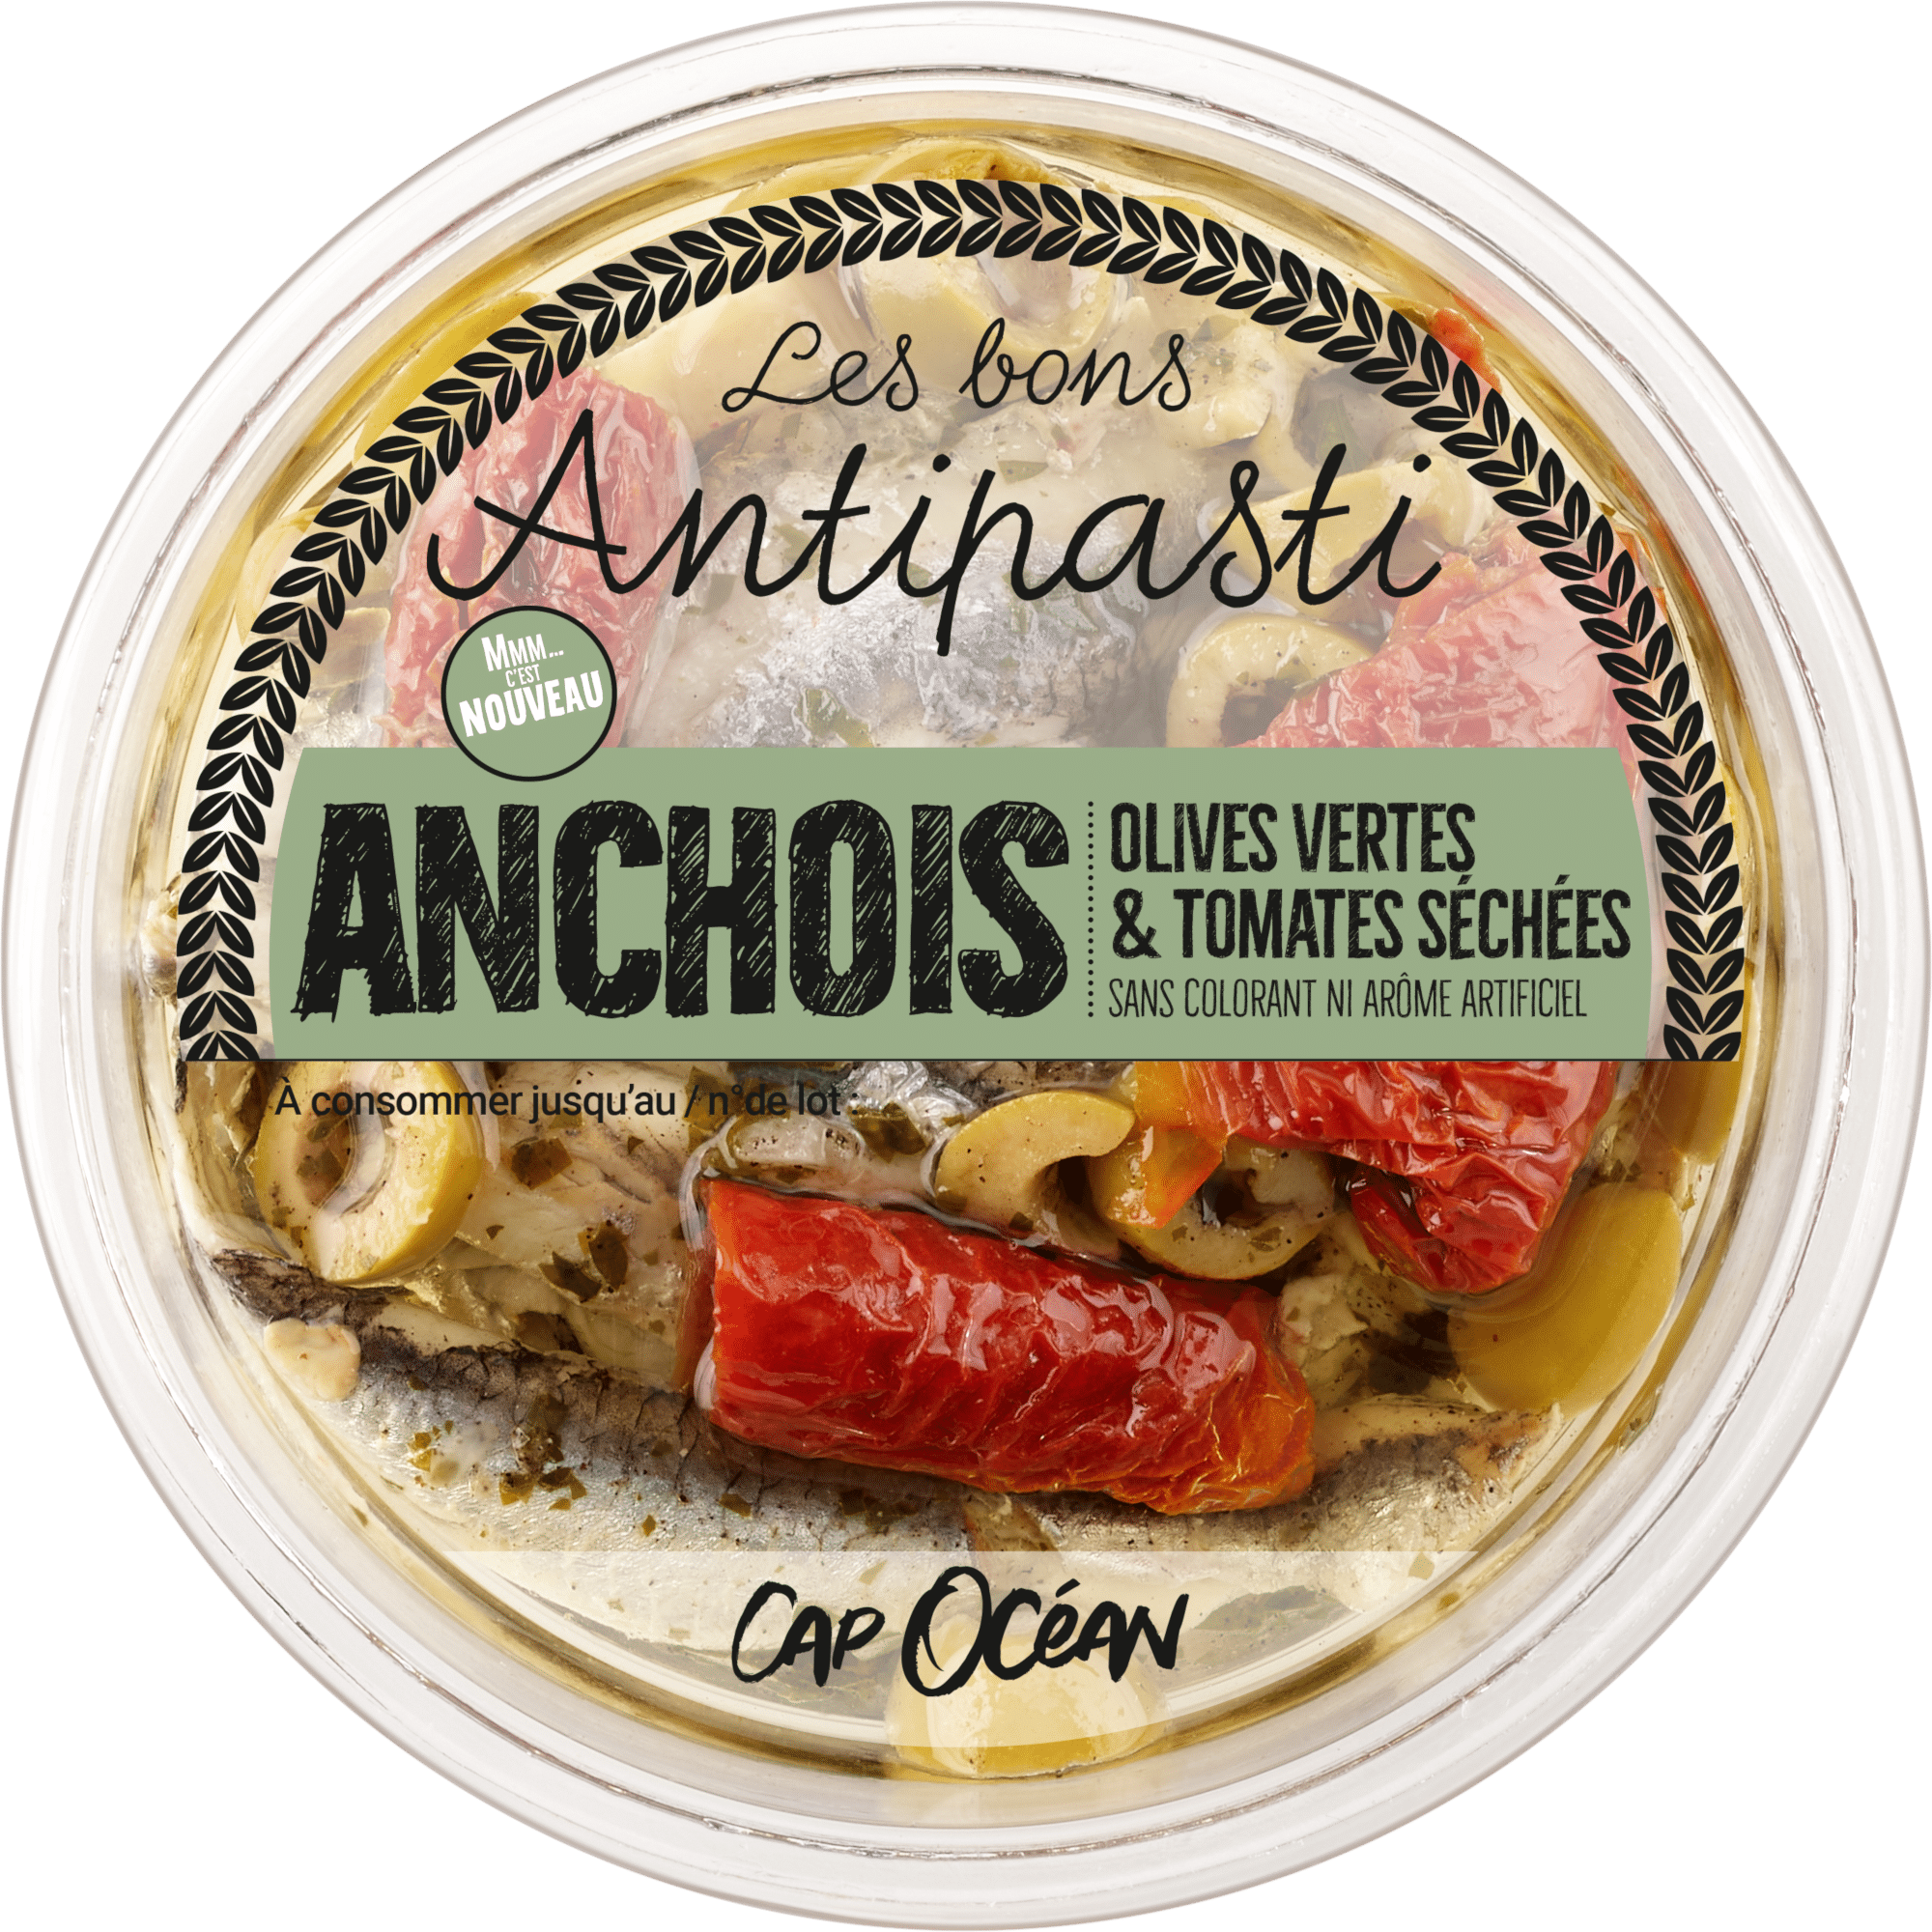 Antipasti Anchois Olives vertes & Tomates séchées